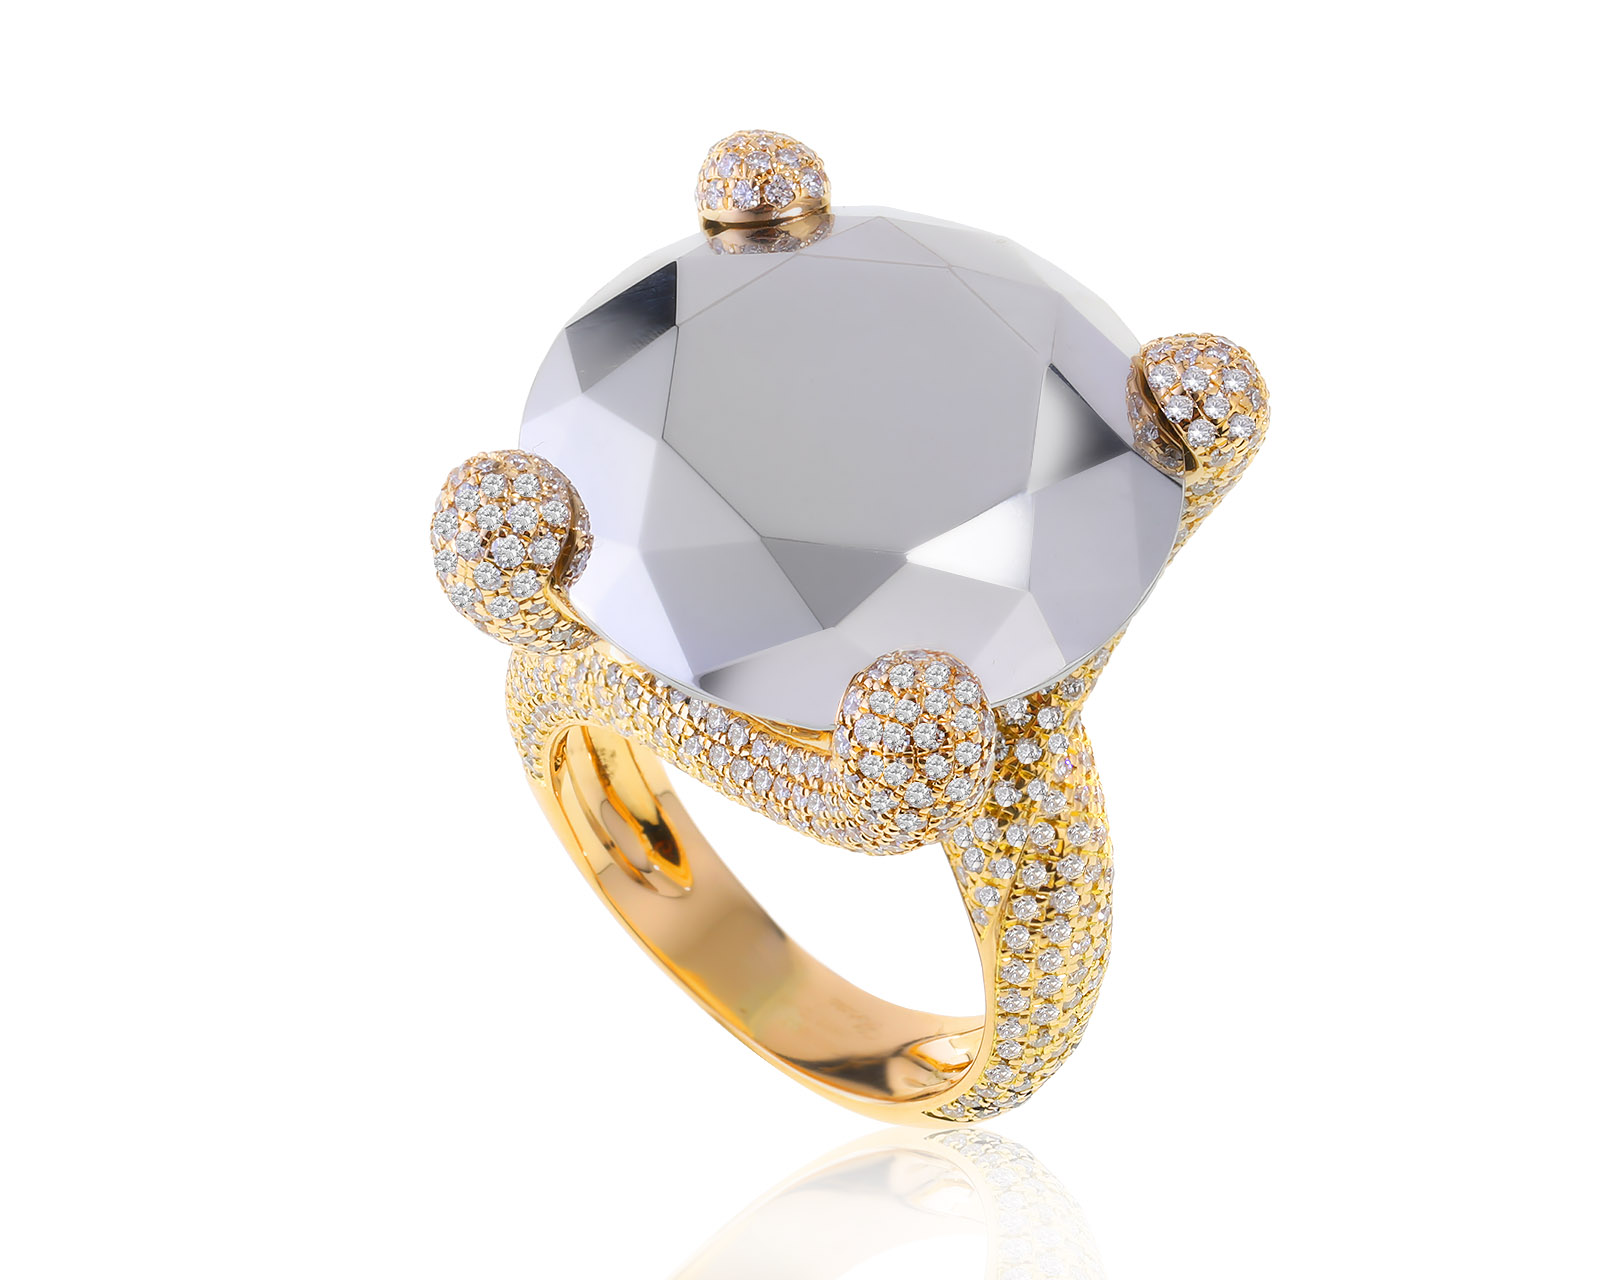 Оригинальное золотое кольцо с бриллиантами 2.62ct Chopard